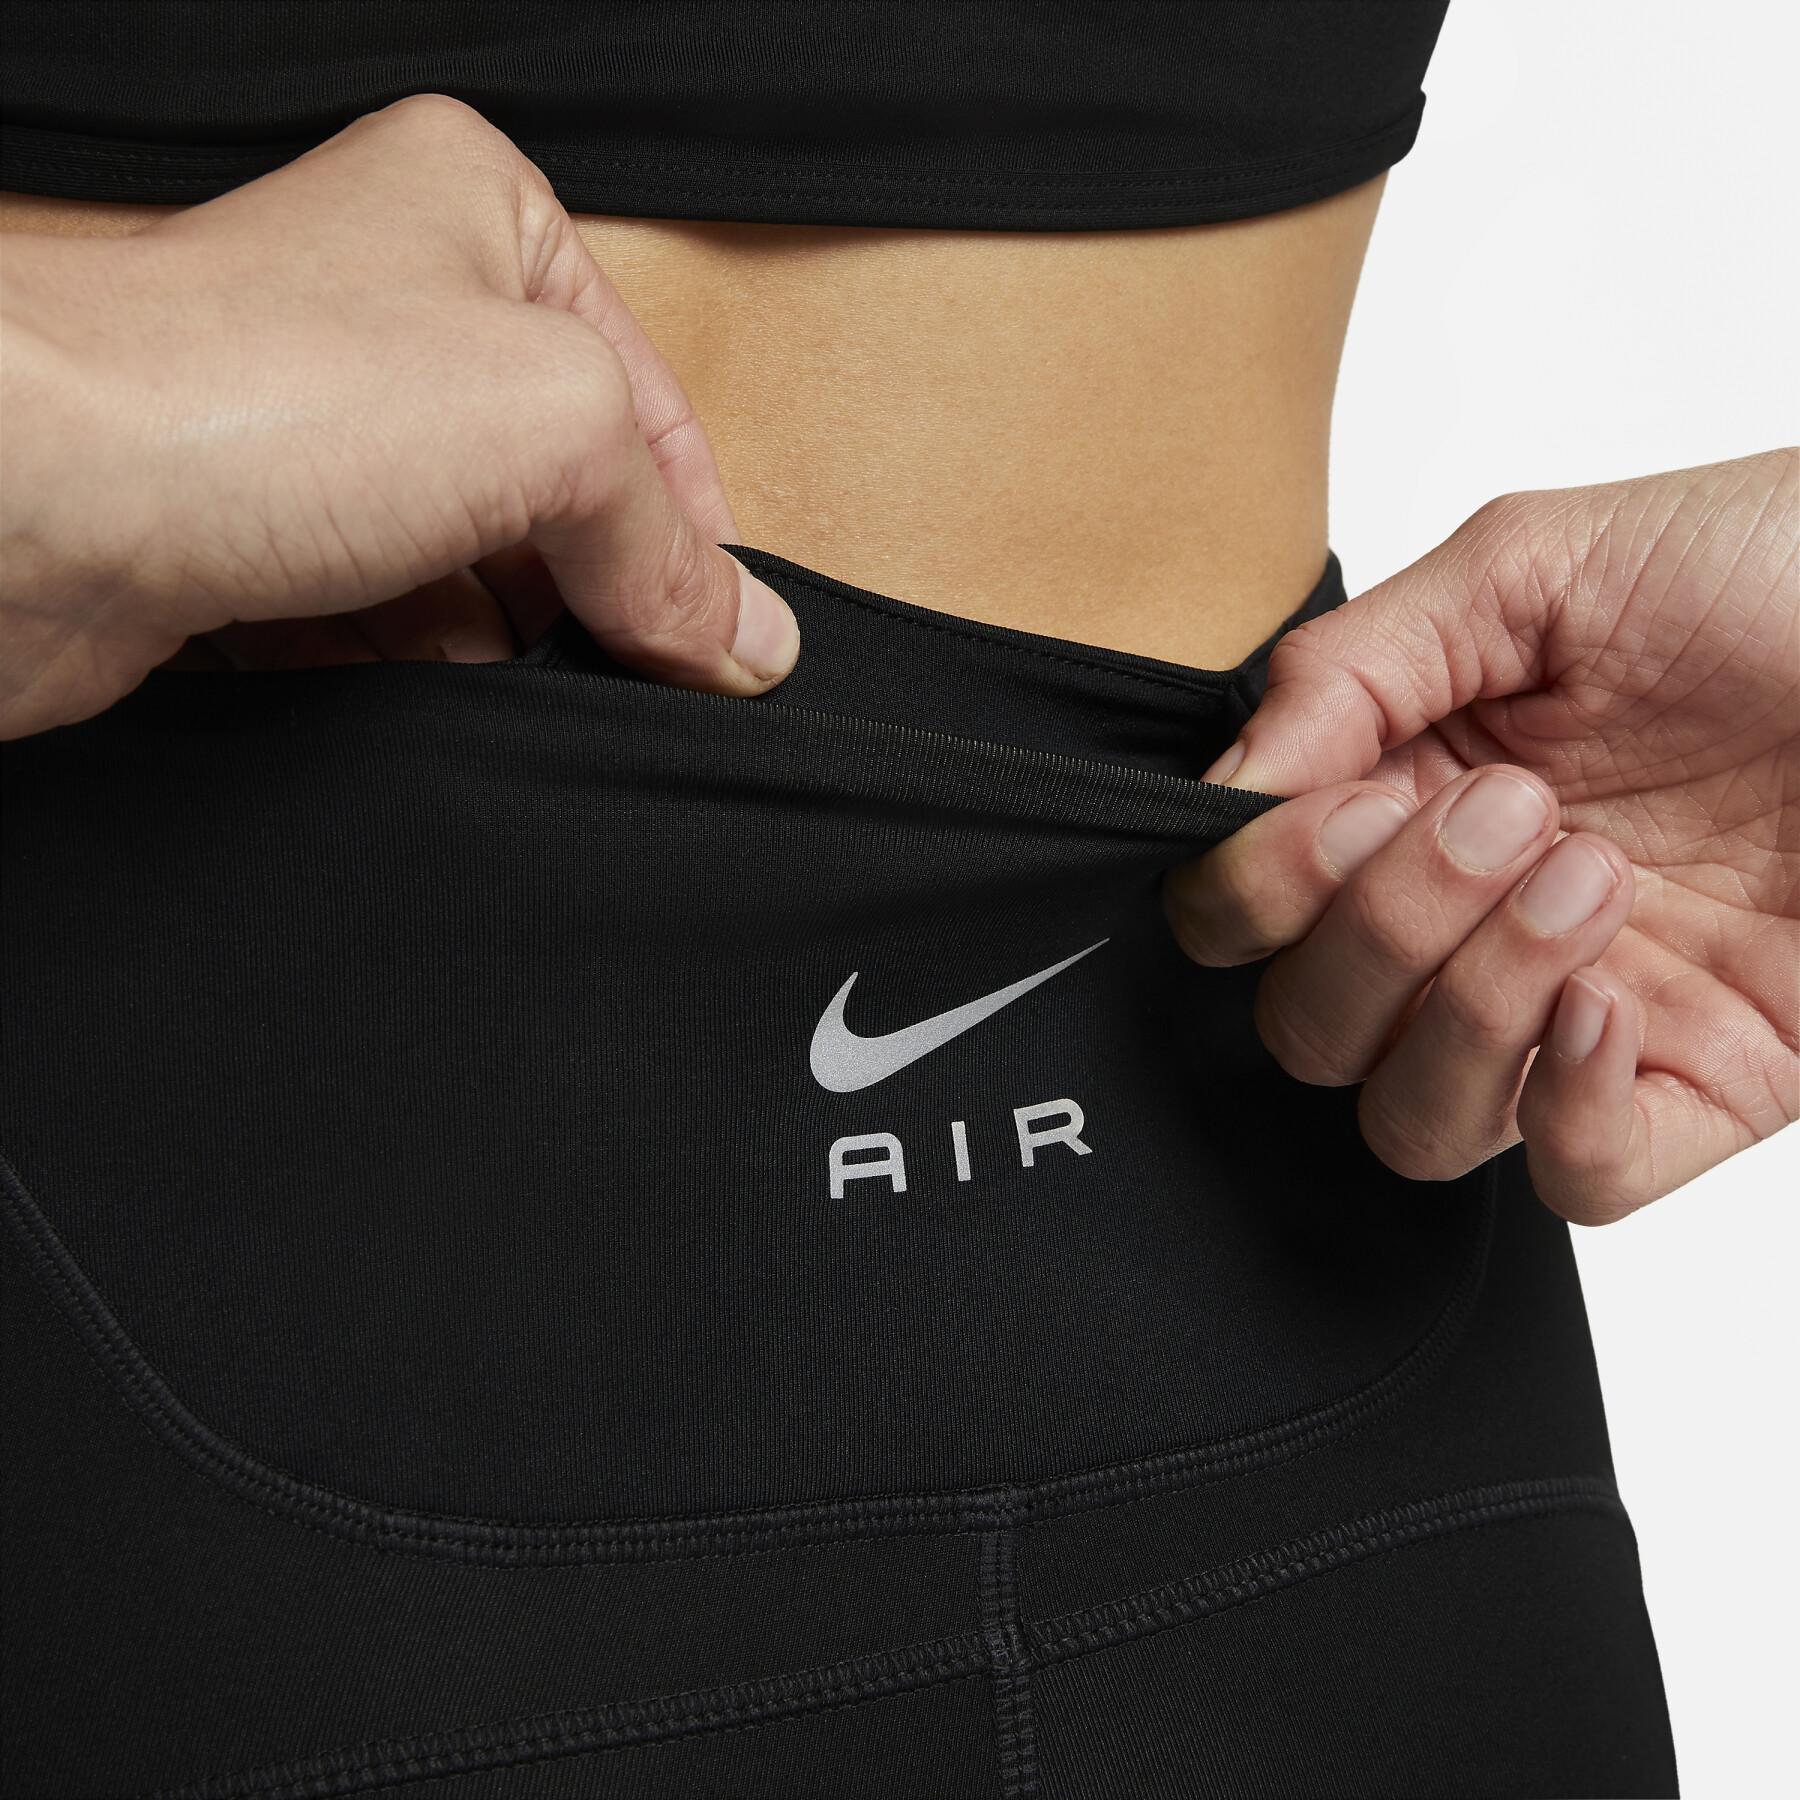 Dijhoge dameslaarzen Nike Dri-FIT Air 7 "